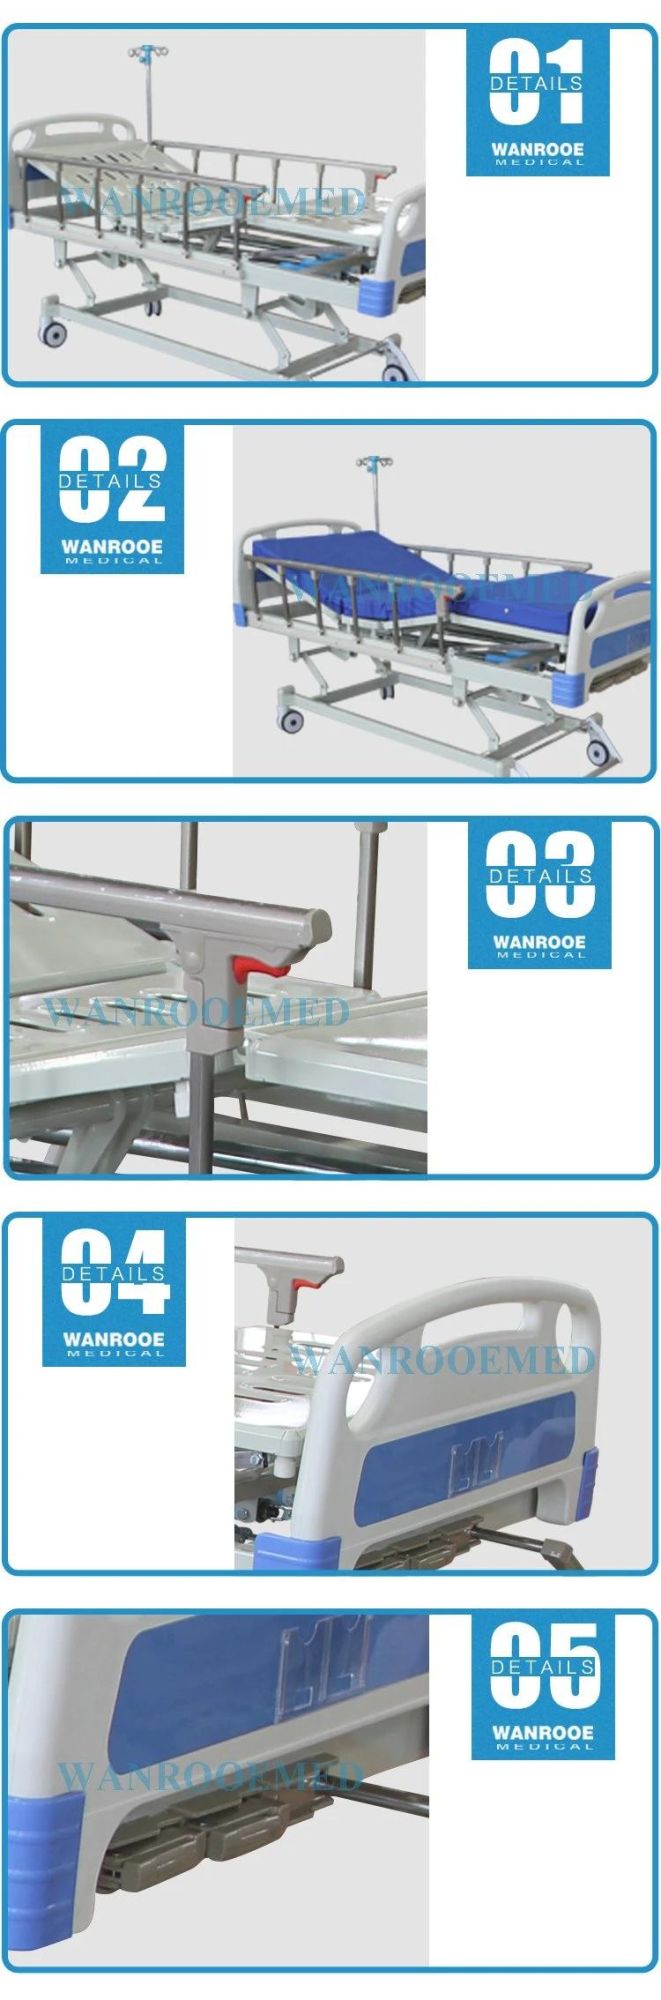 Bam302 Manual Adjustable Hospital Furniture Medical ICU Patient Bed